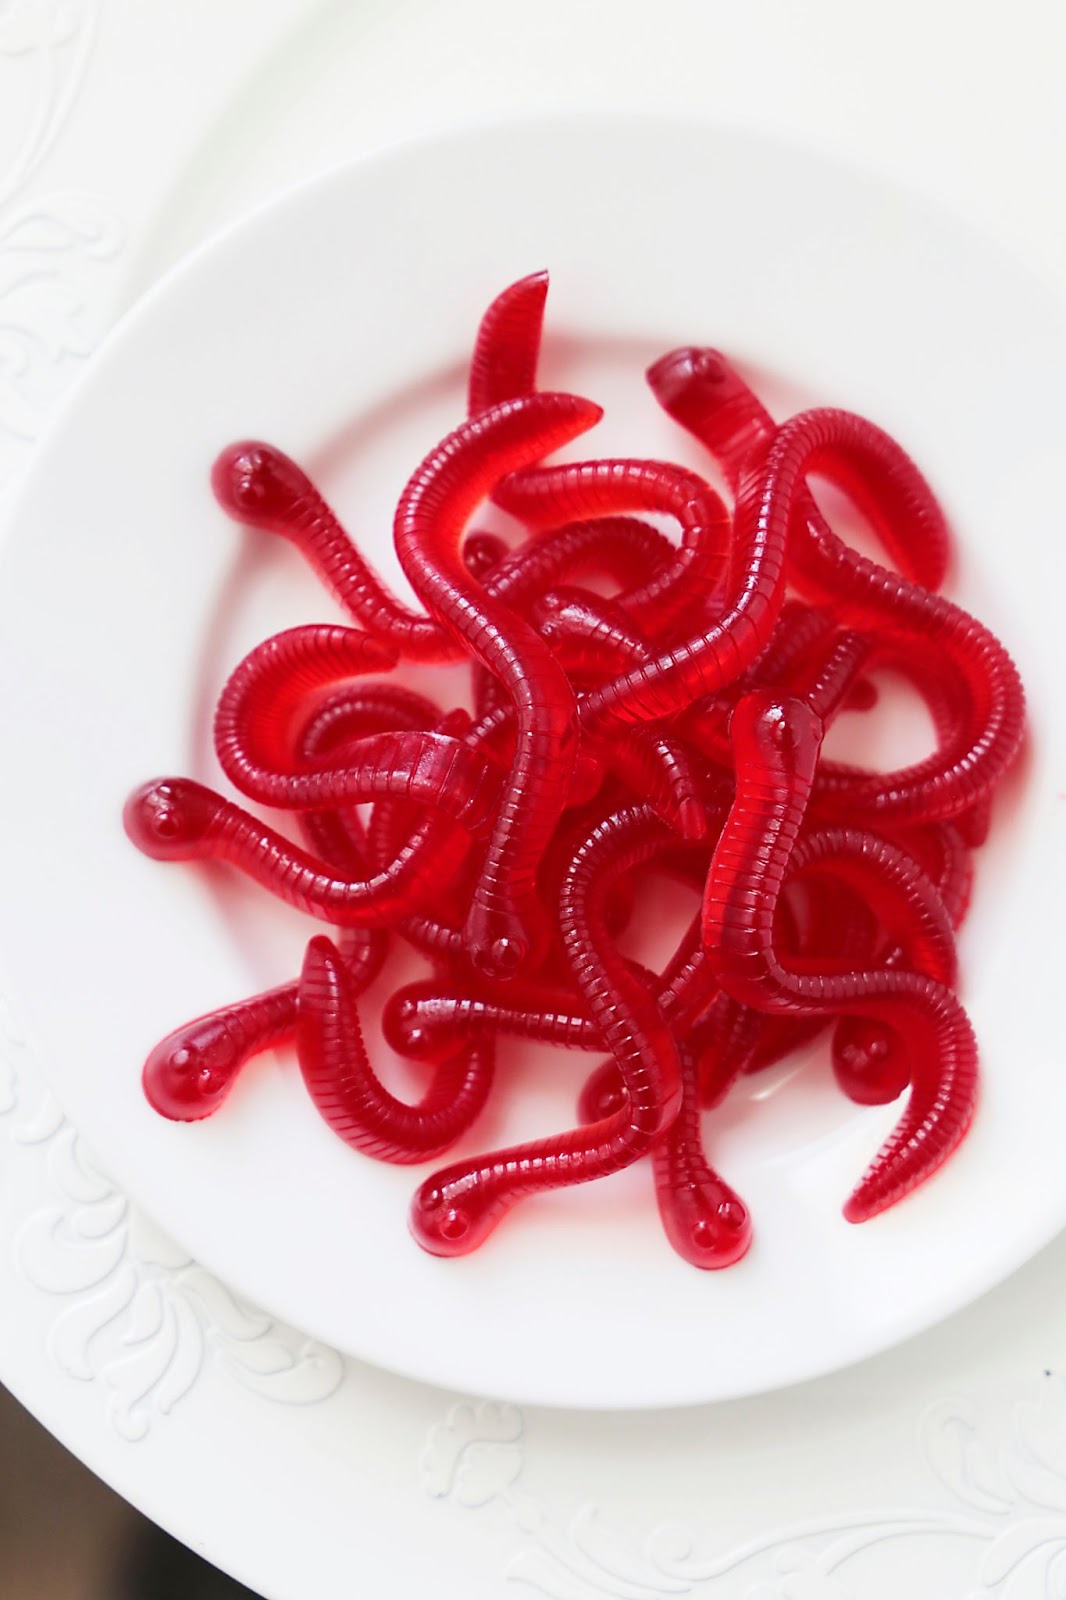 gelatin worms